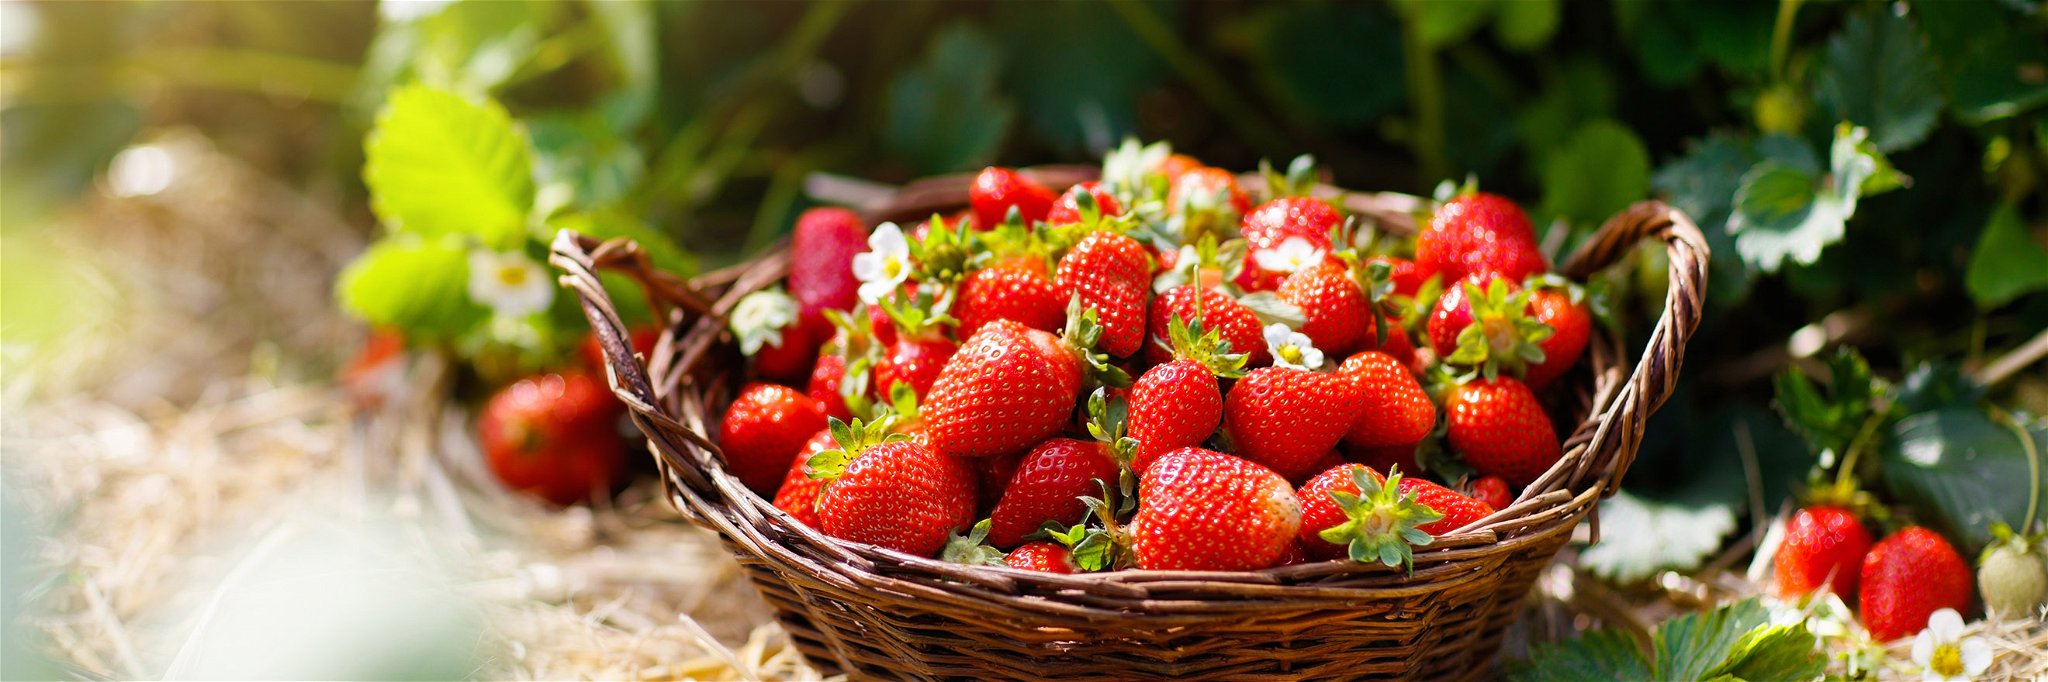 Rund 3,7 Kilogramm Erdbeeren isst jeder Deutsche durchschnittlich im Jahr.